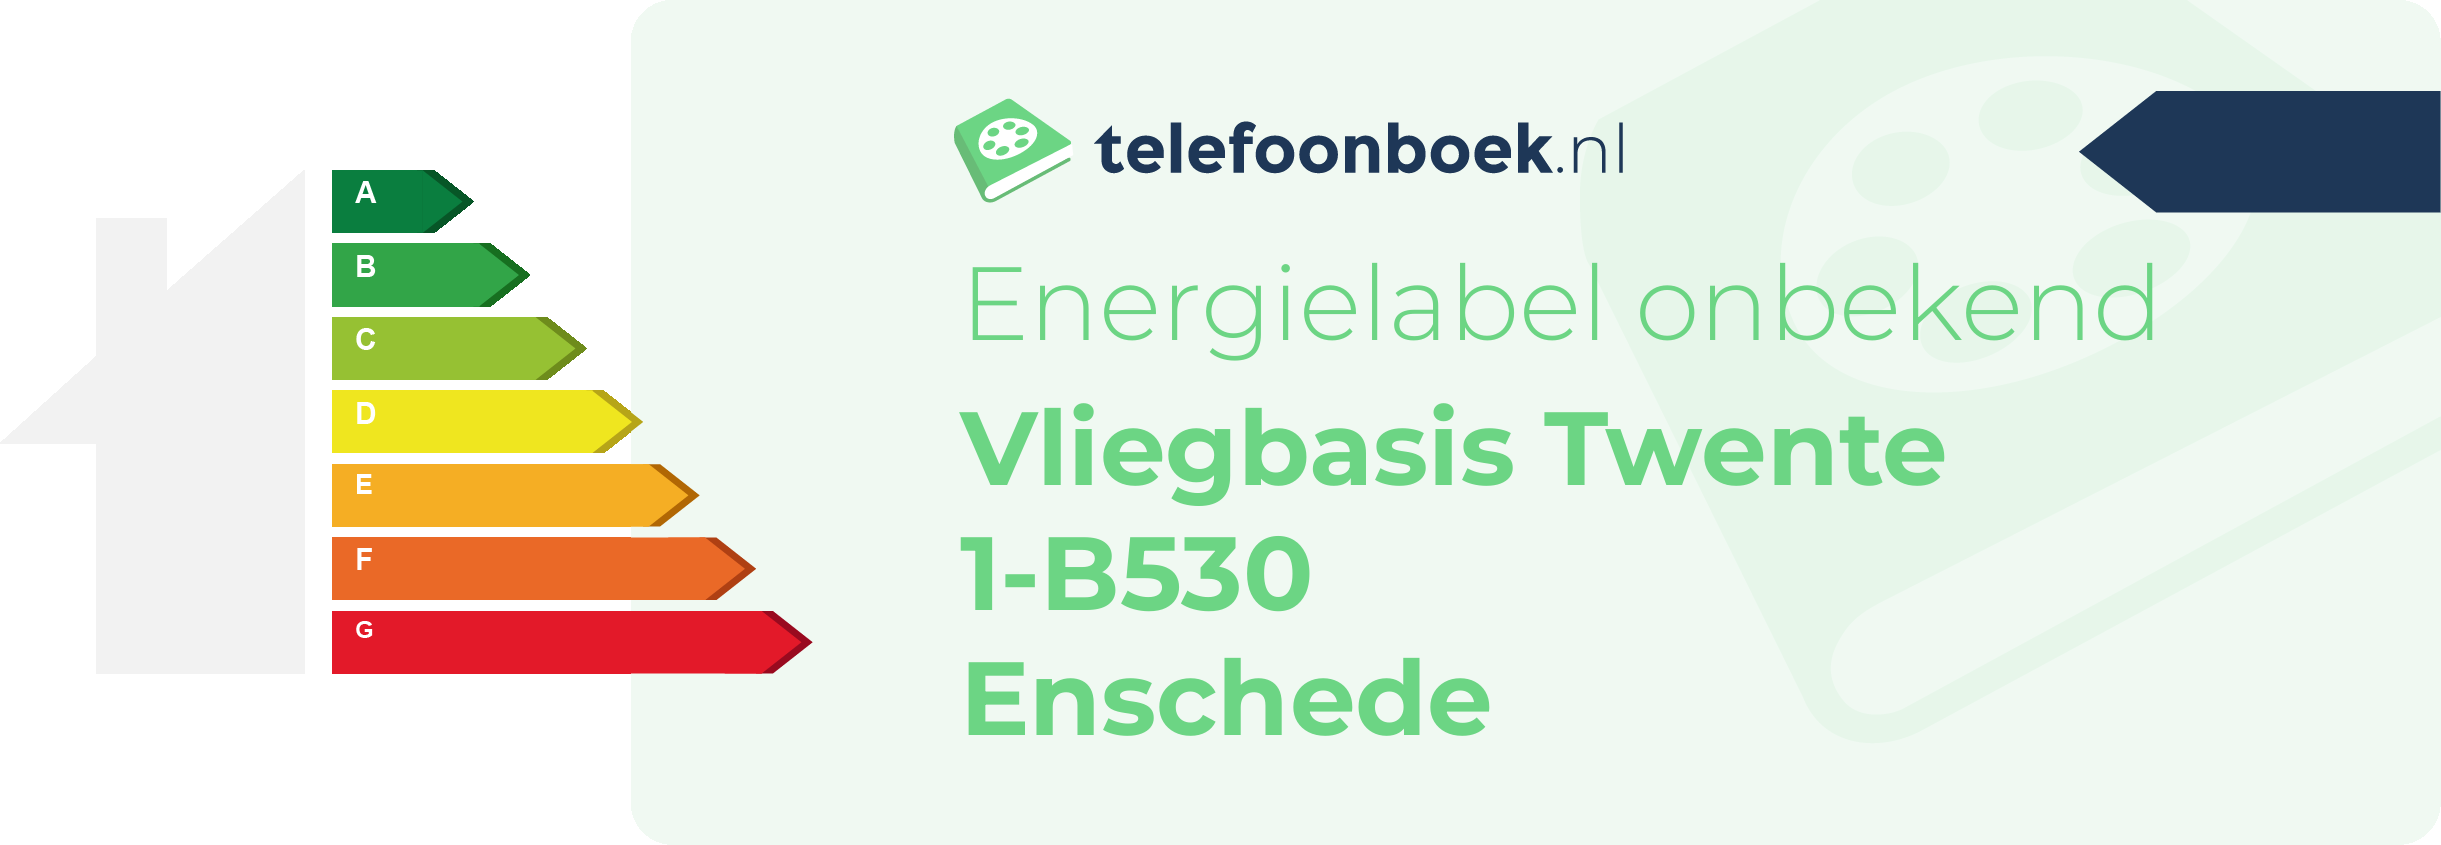 Energielabel Vliegbasis Twente 1-B530 Enschede